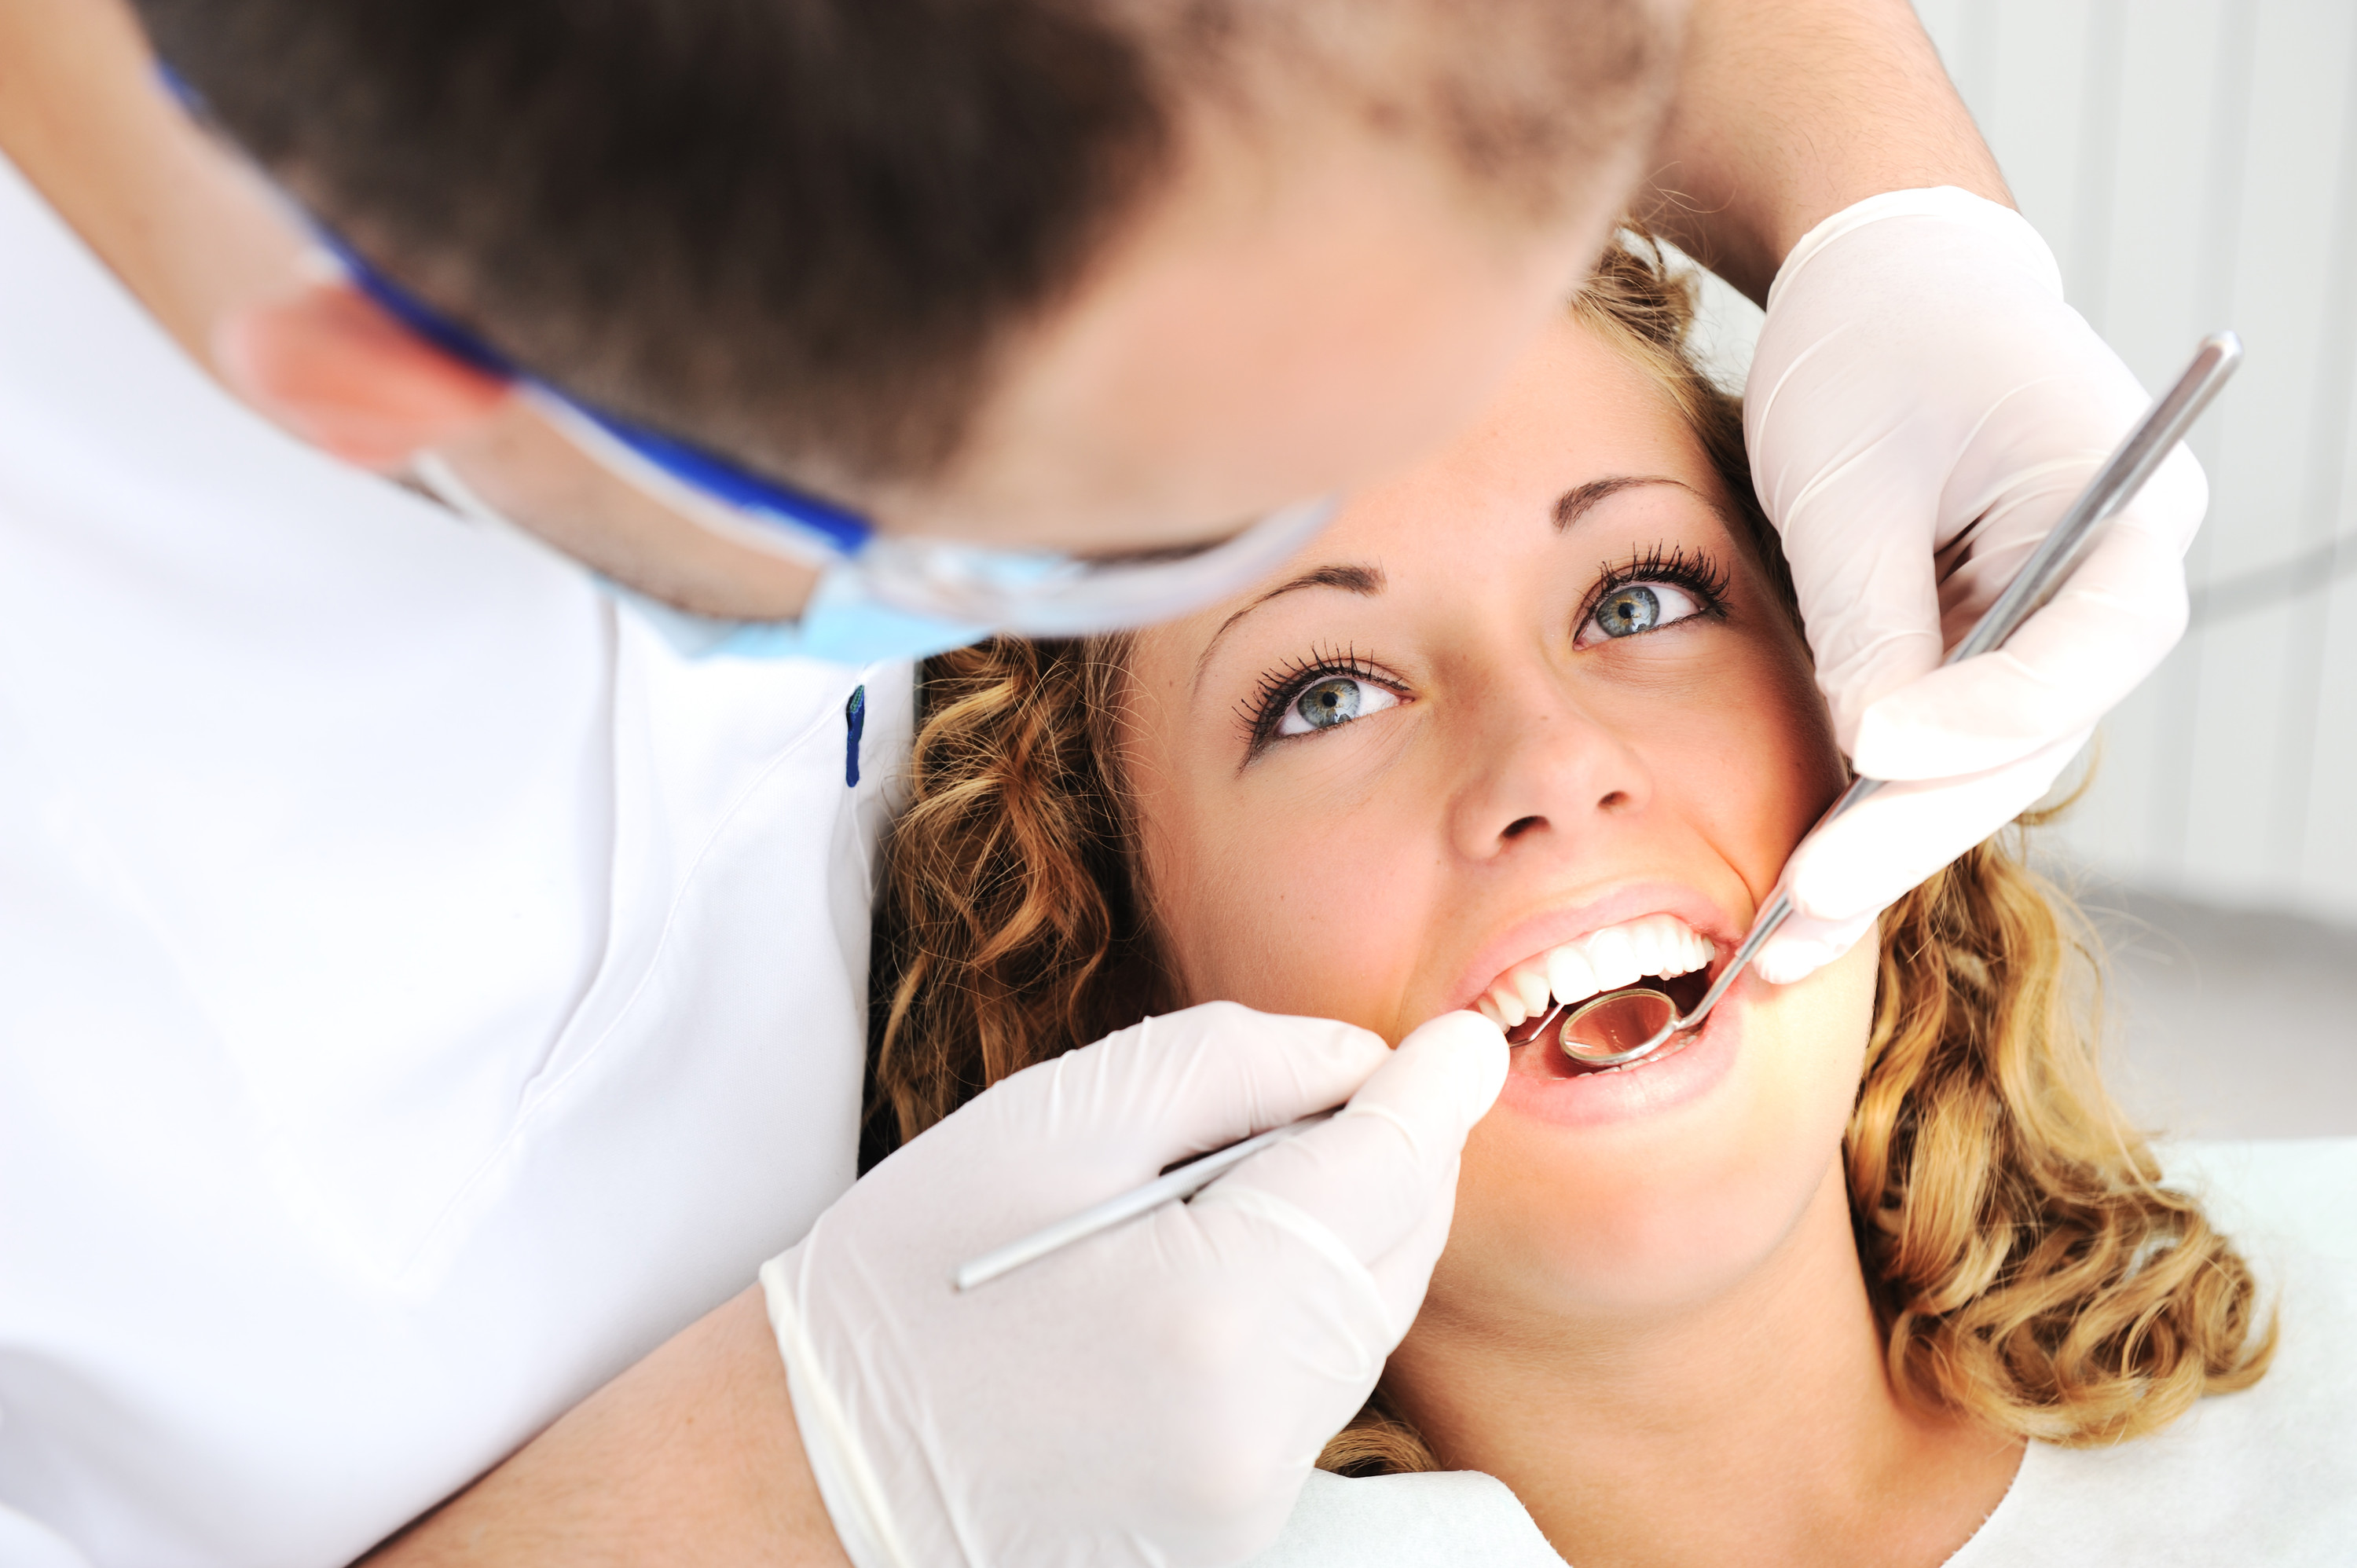 Πρόσβαση σε οδοντιατρικές υπηρεσίες με την κάλυψη του ΕΟΠΥΥ αποκτούν οι ασφαλισμένοι